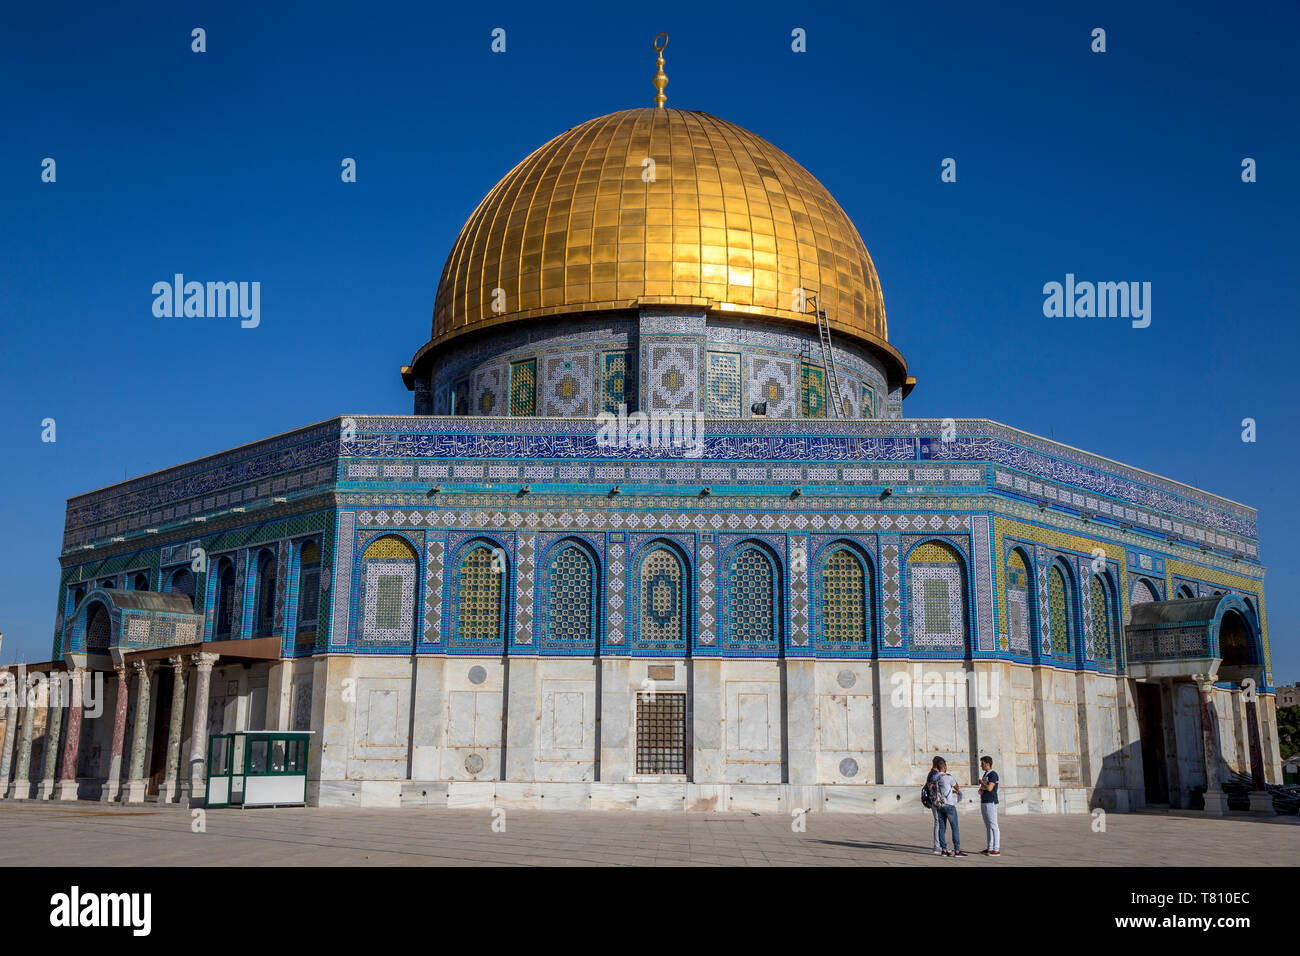 La cúpula de la roca, Sitio del Patrimonio Mundial de la UNESCO, Jerusalén oriental, Israel, Oriente Medio Foto de stock